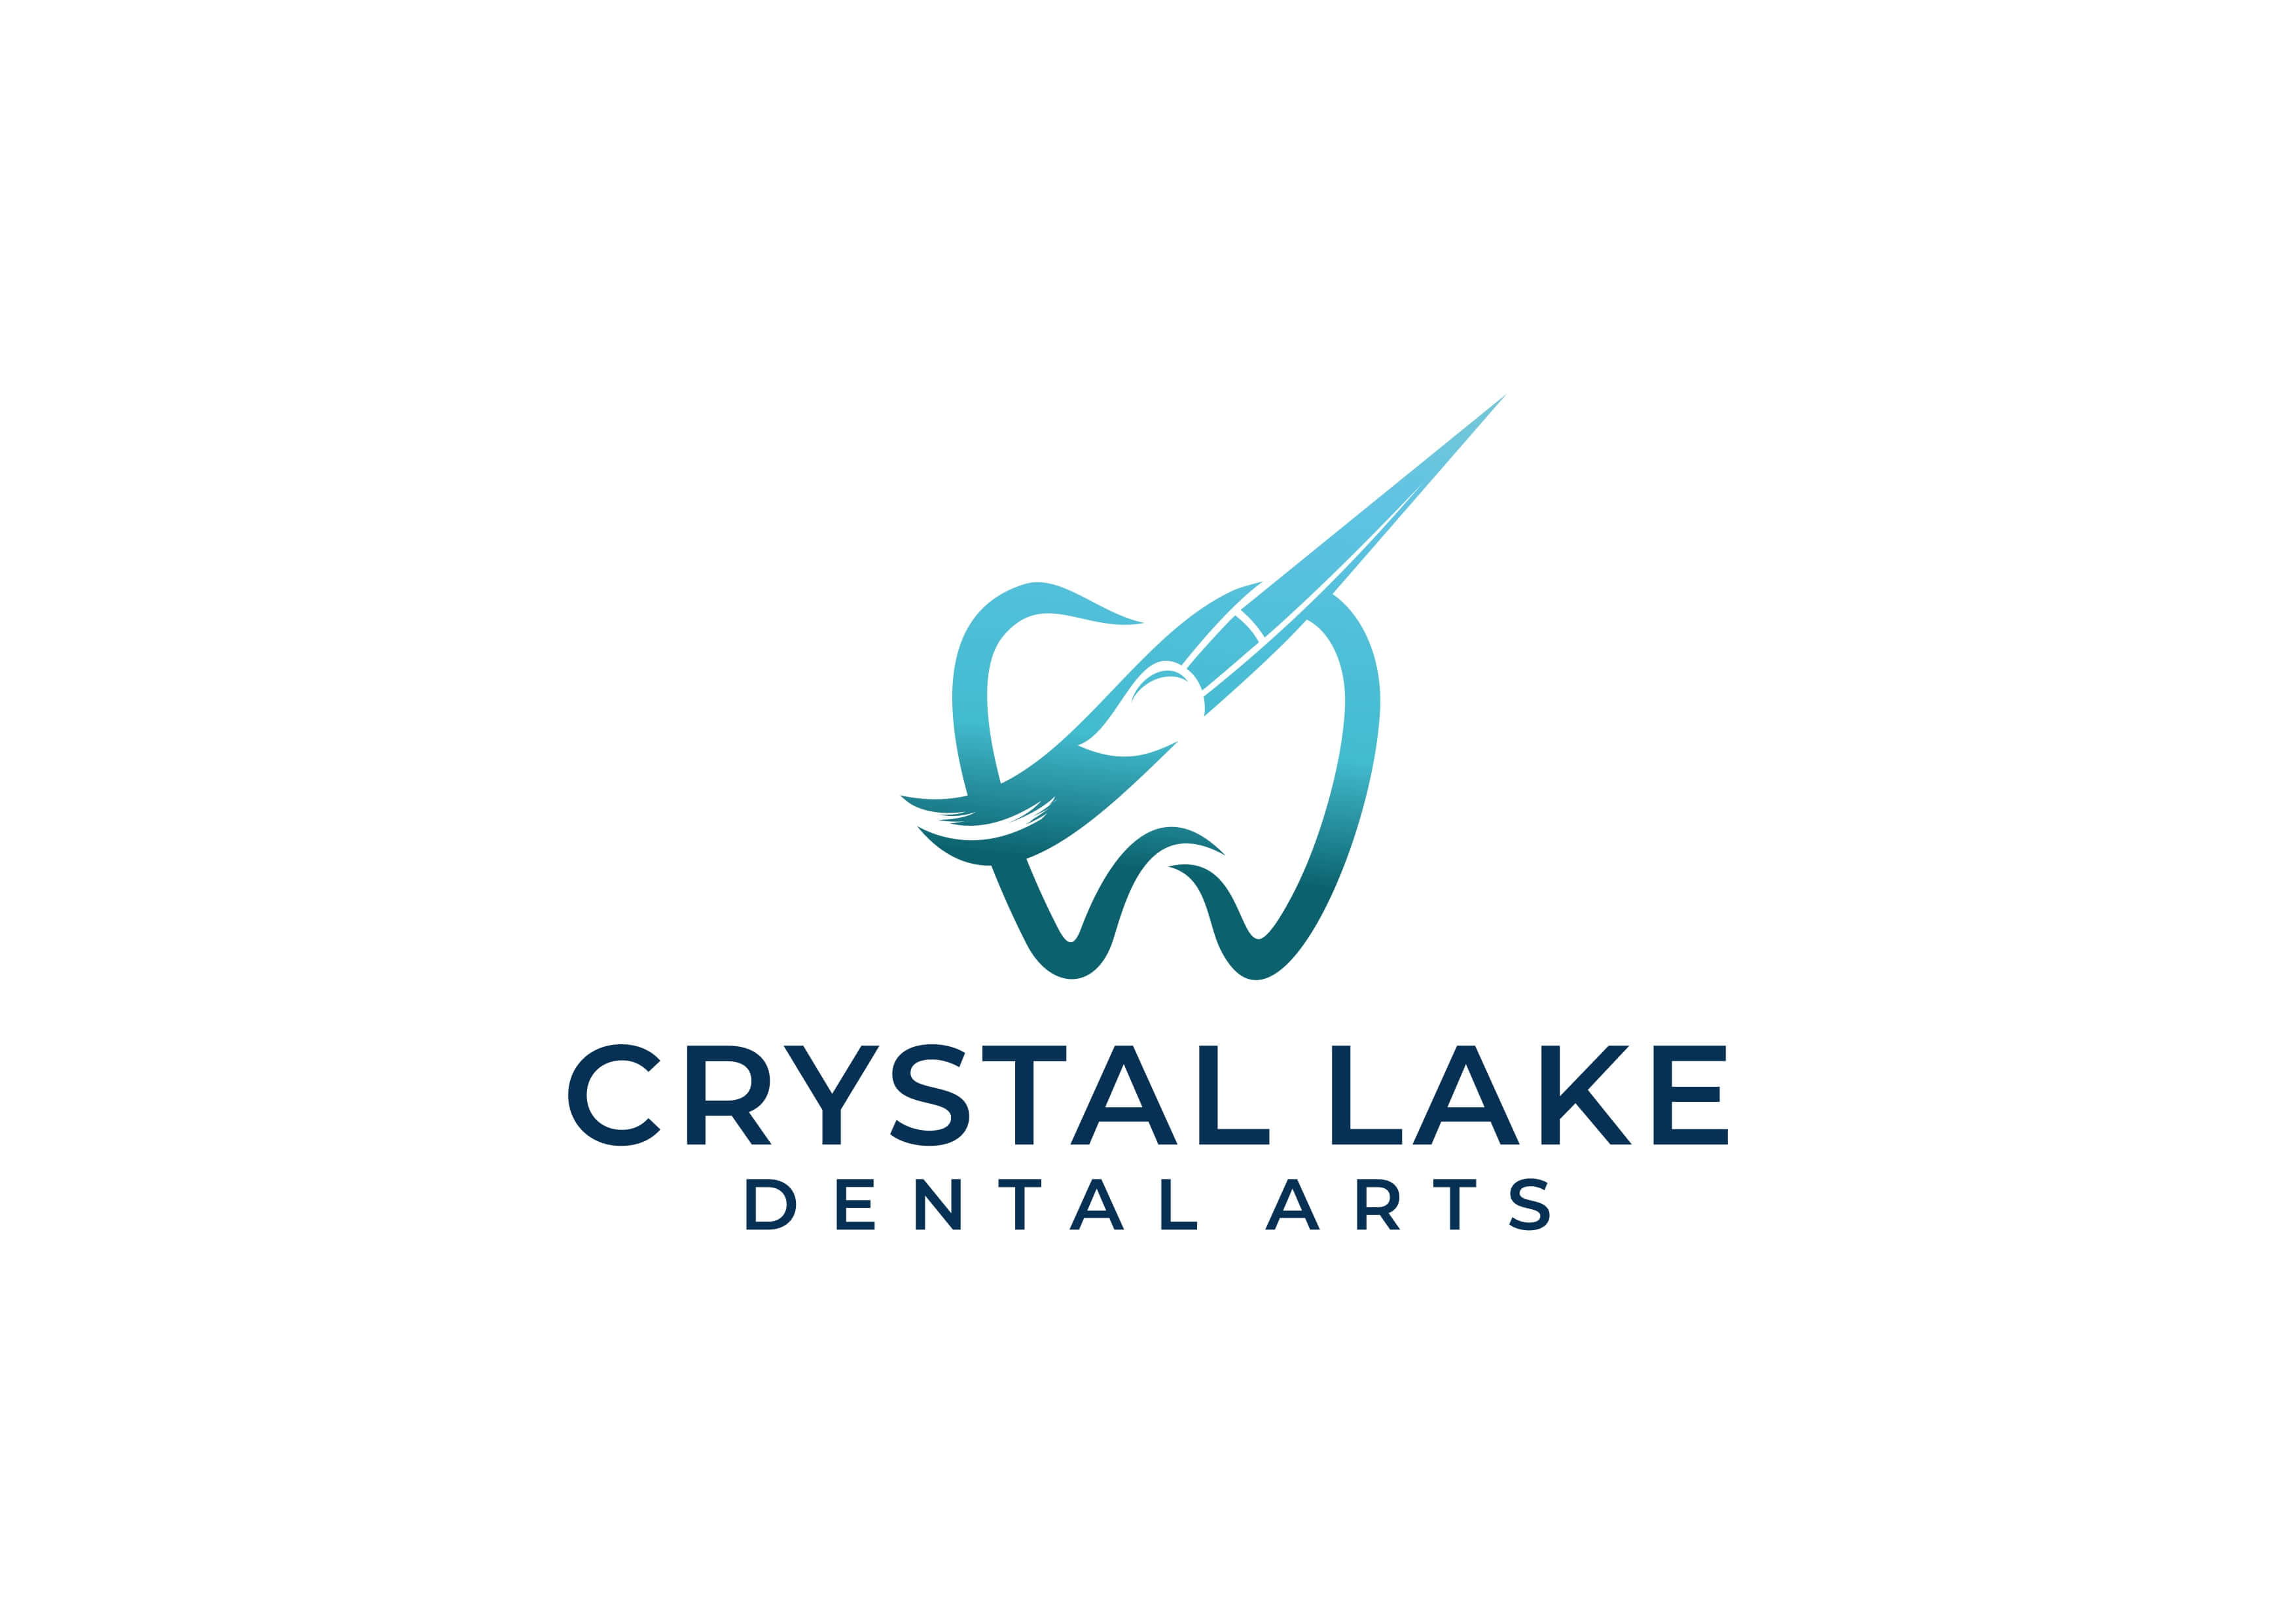  Crystal Lake Dental Arts